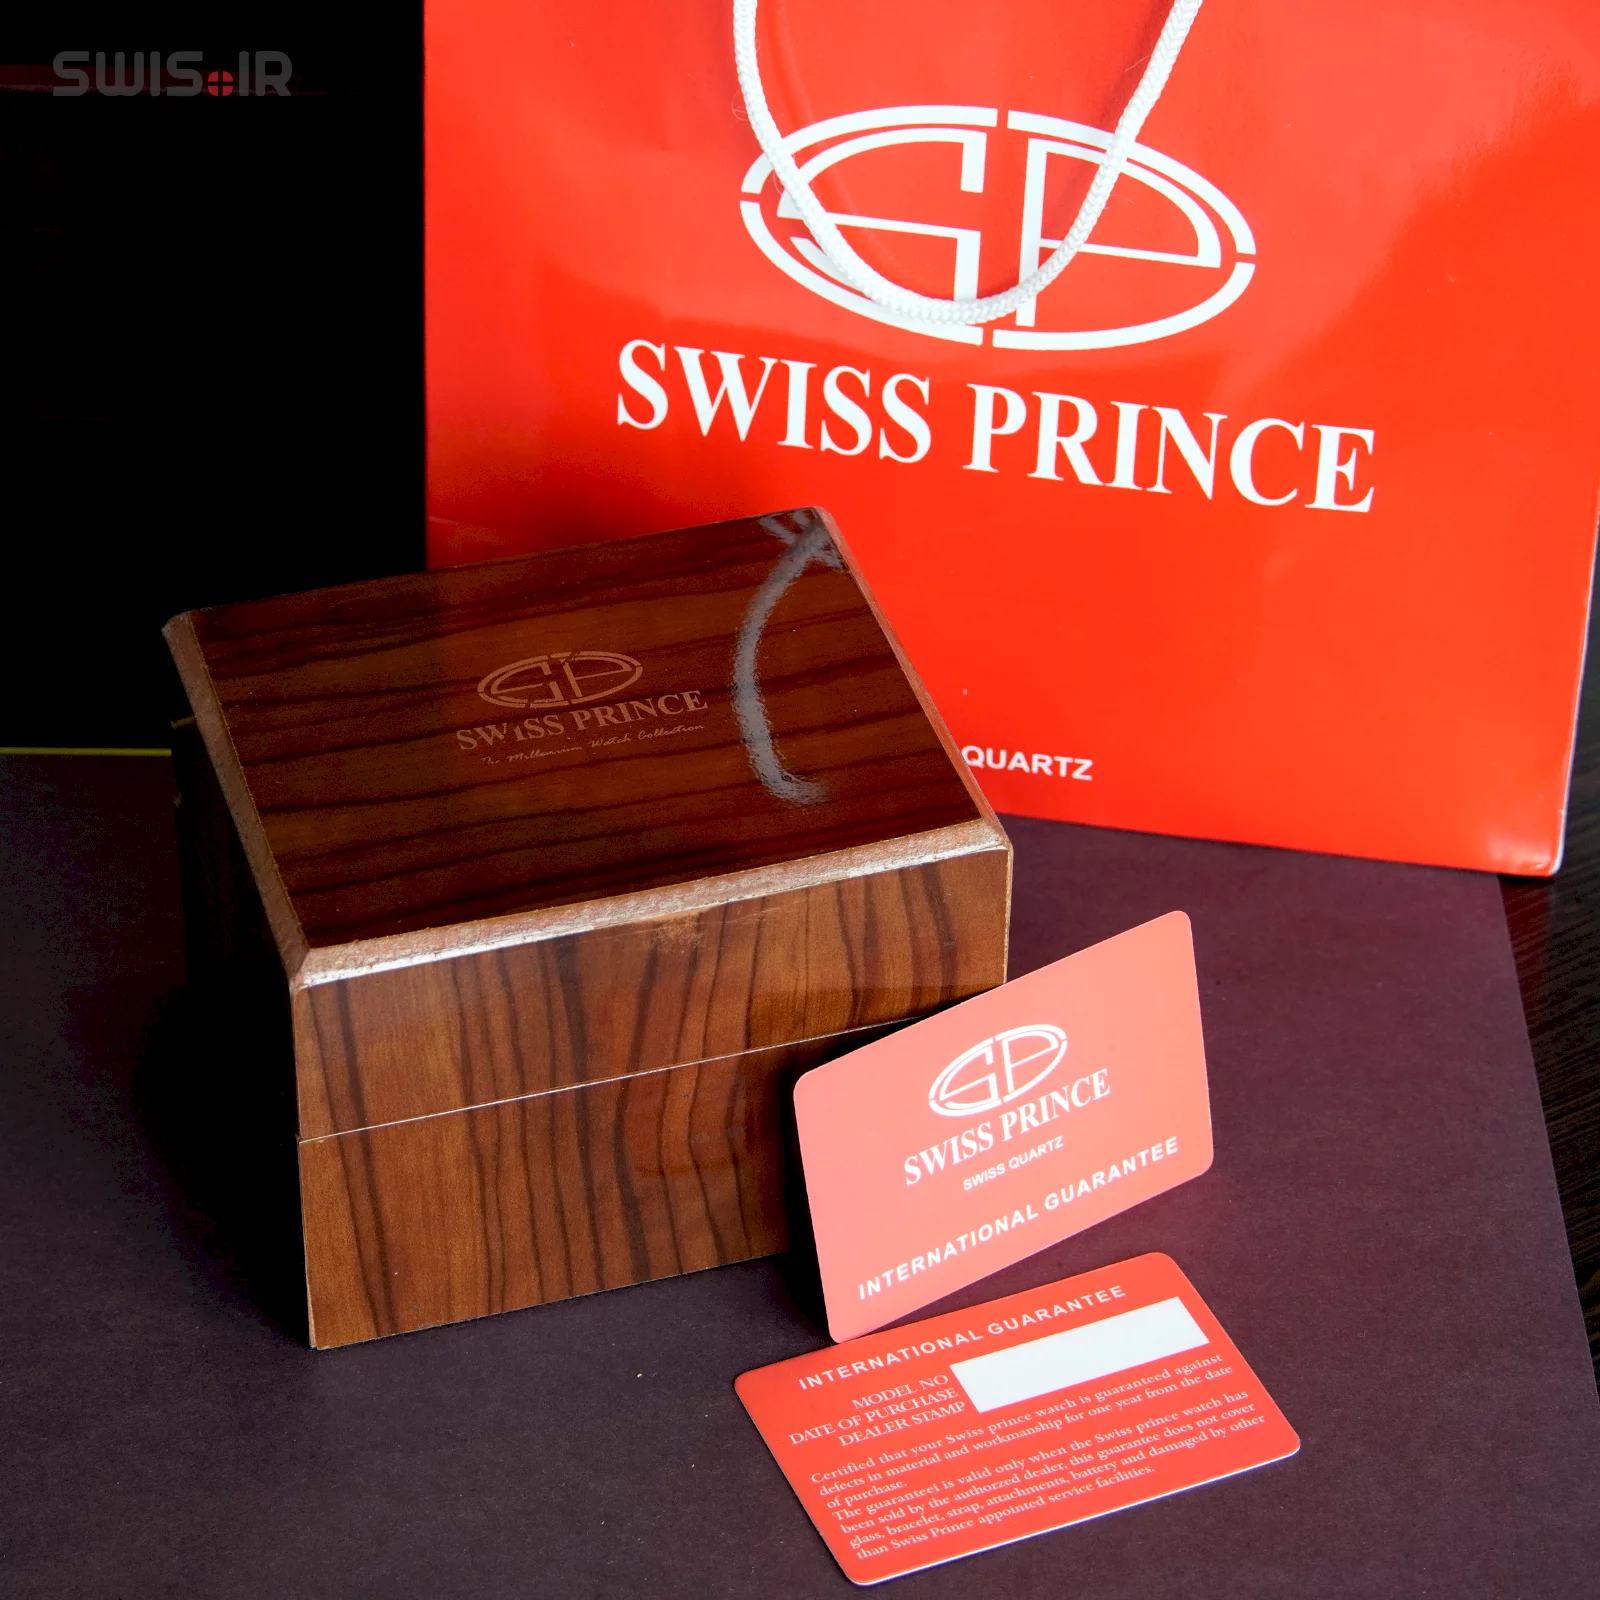 نمونه جعبه ساعت و ساک مخصوص و کارت گارانتی برند سوئیس پرینس